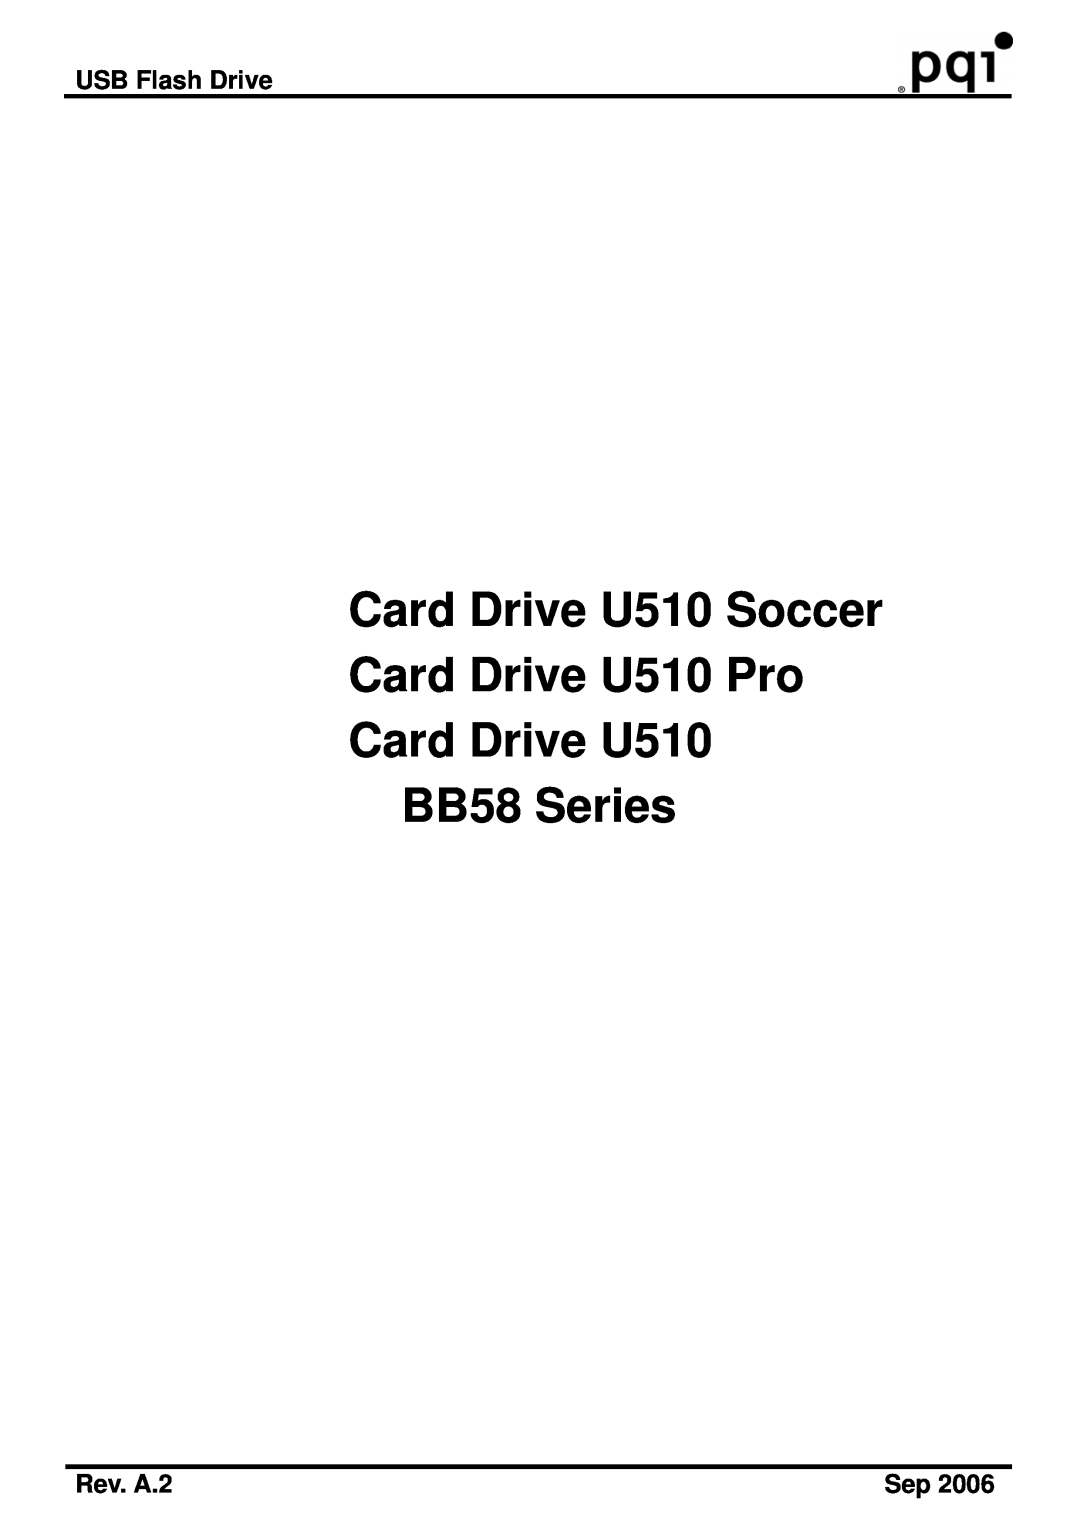 PQI manual USB Flash Drive, Rev. A.2, Card Drive U510 Soccer Card Drive U510 Pro Card Drive U510, BB58 Series 